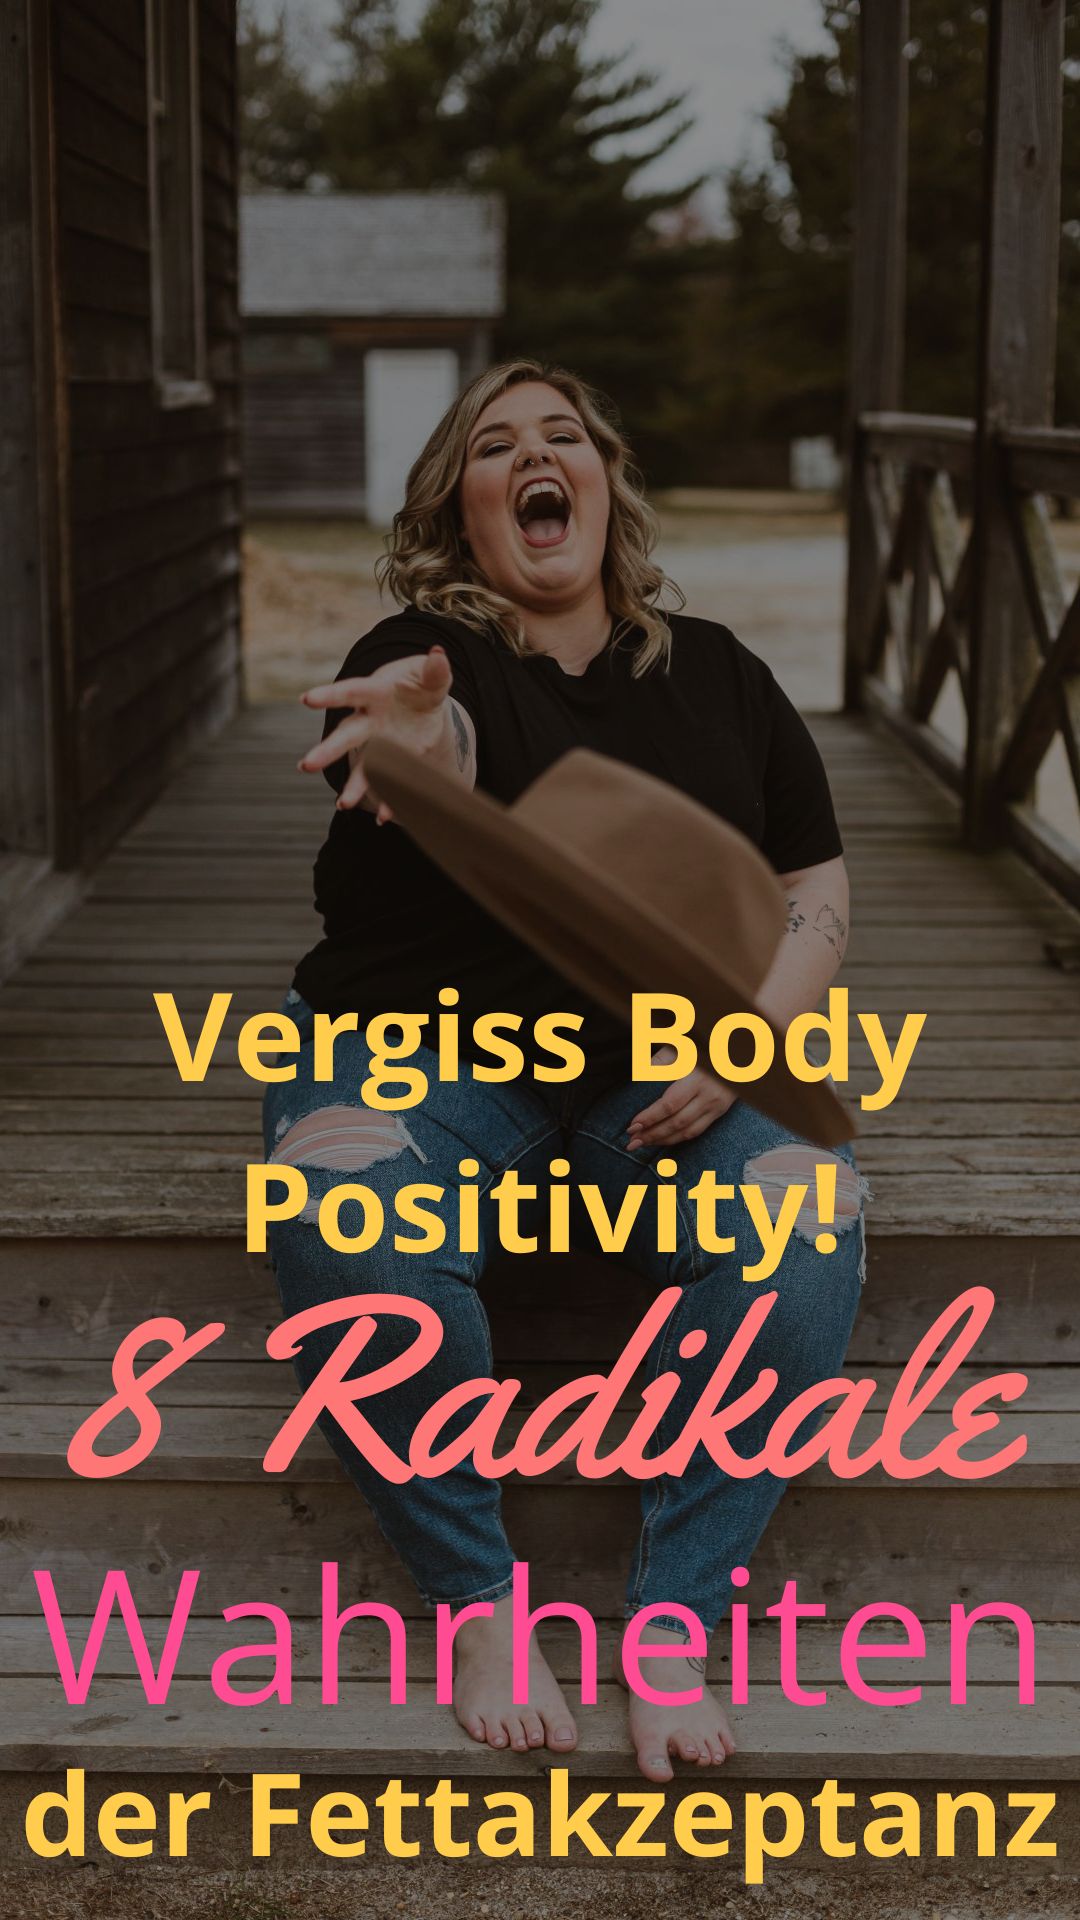 Vergiss-Body-Positivity-8-Radikale-Wahrheiten-der-Fettakzeptanz